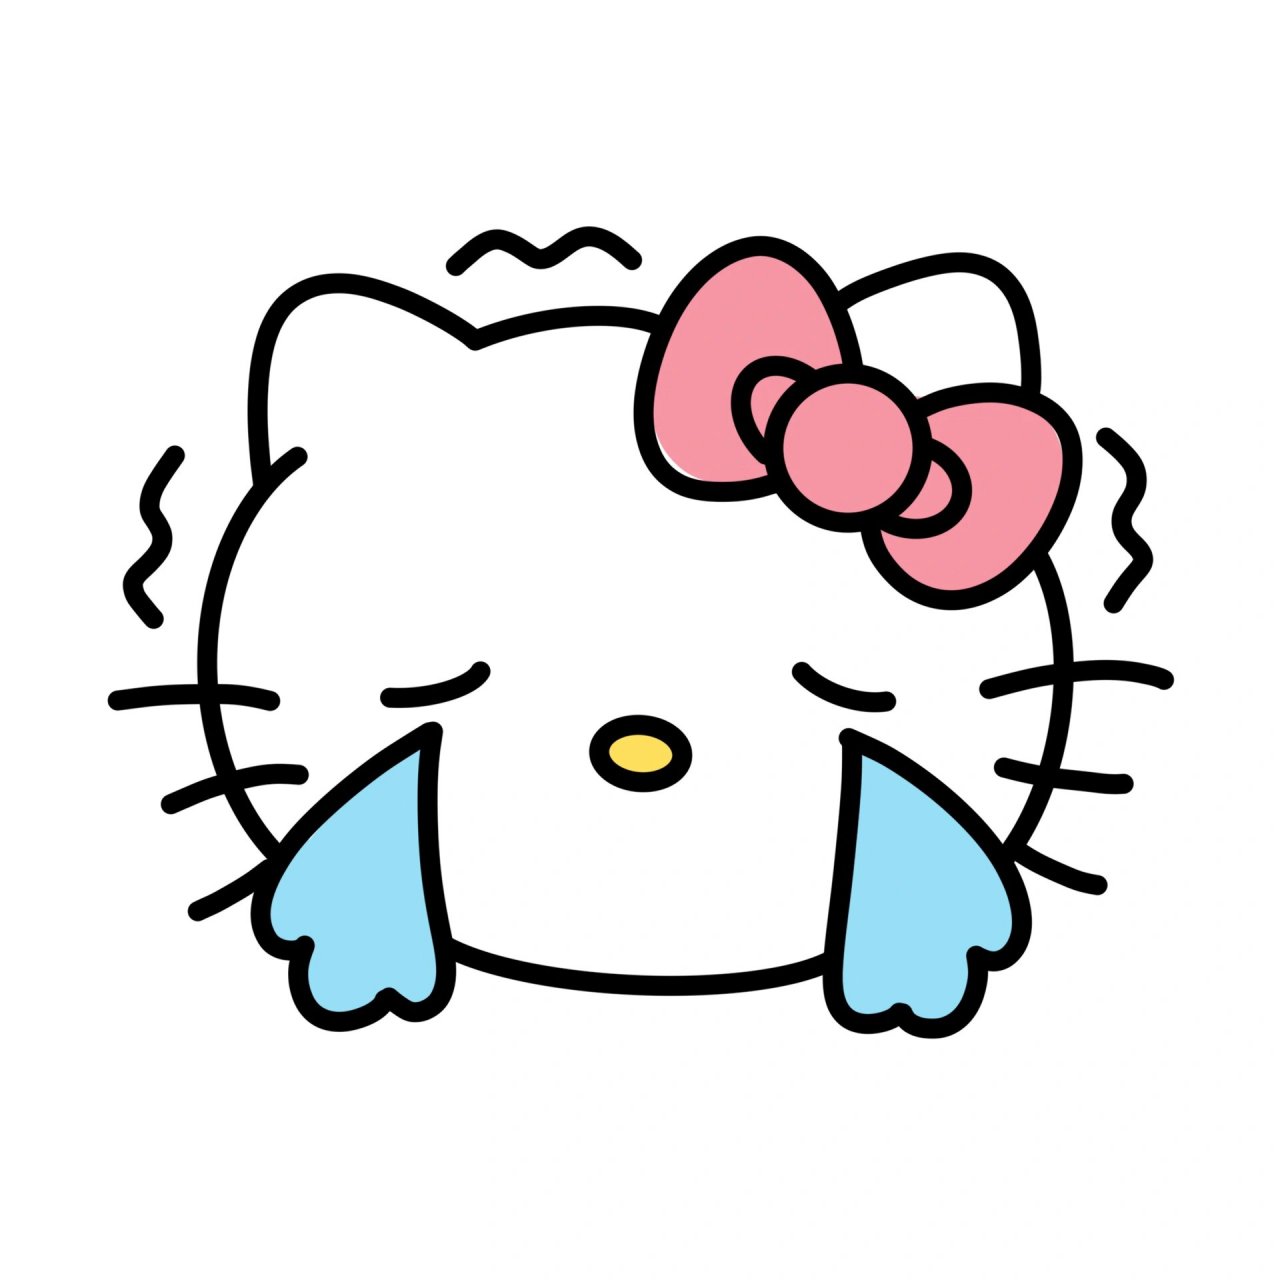 萌萌的简笔画 今天看到了超级可爱的凯蒂猫,遂画 喜欢的话可以点个赞